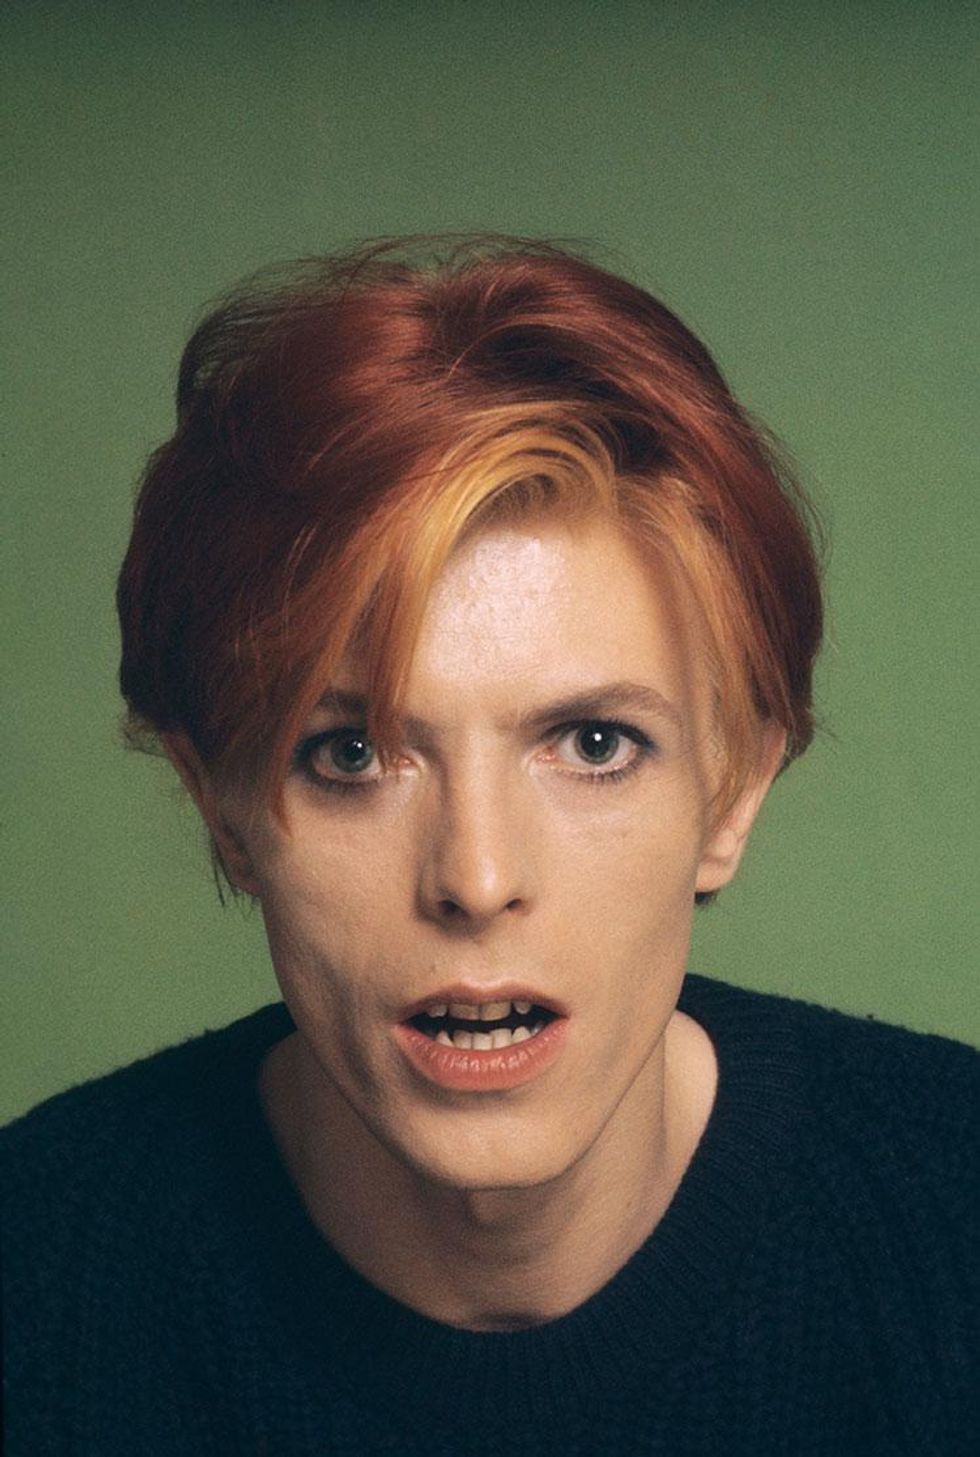 PHOTOS: David Bowie, Gender Futurist